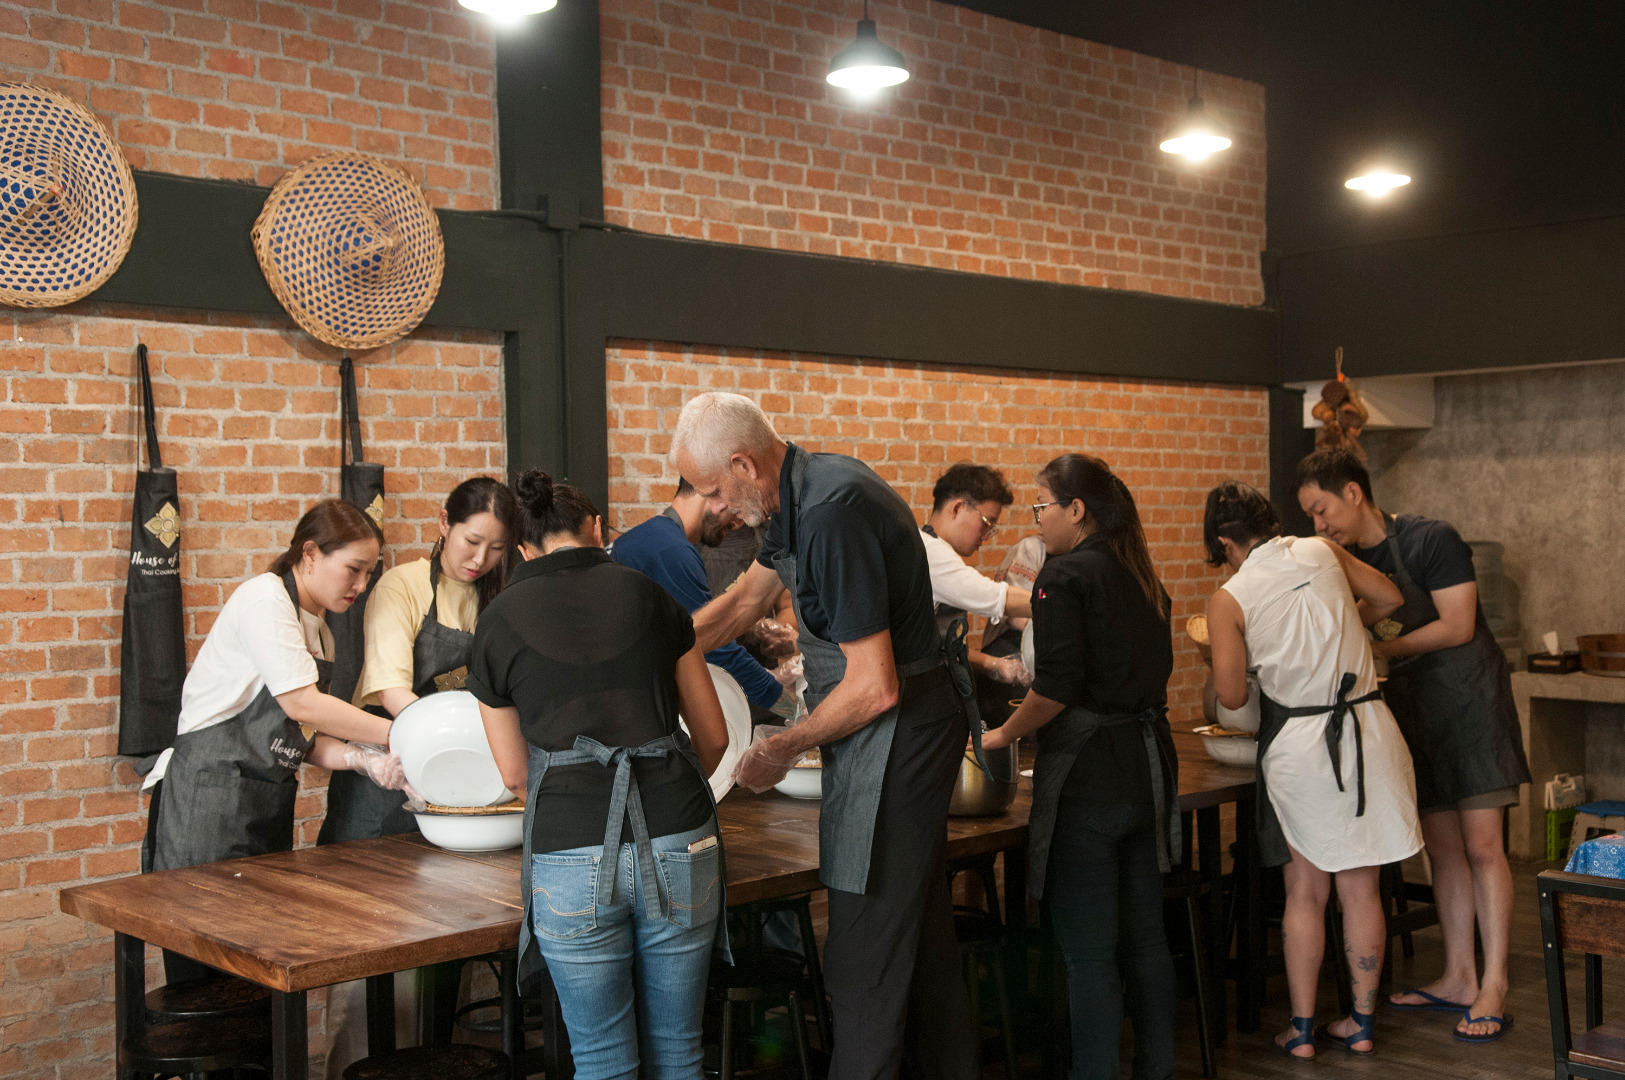 曼谷是隆泰餐之家泰國菜烹飪課程 & 市場遊覽